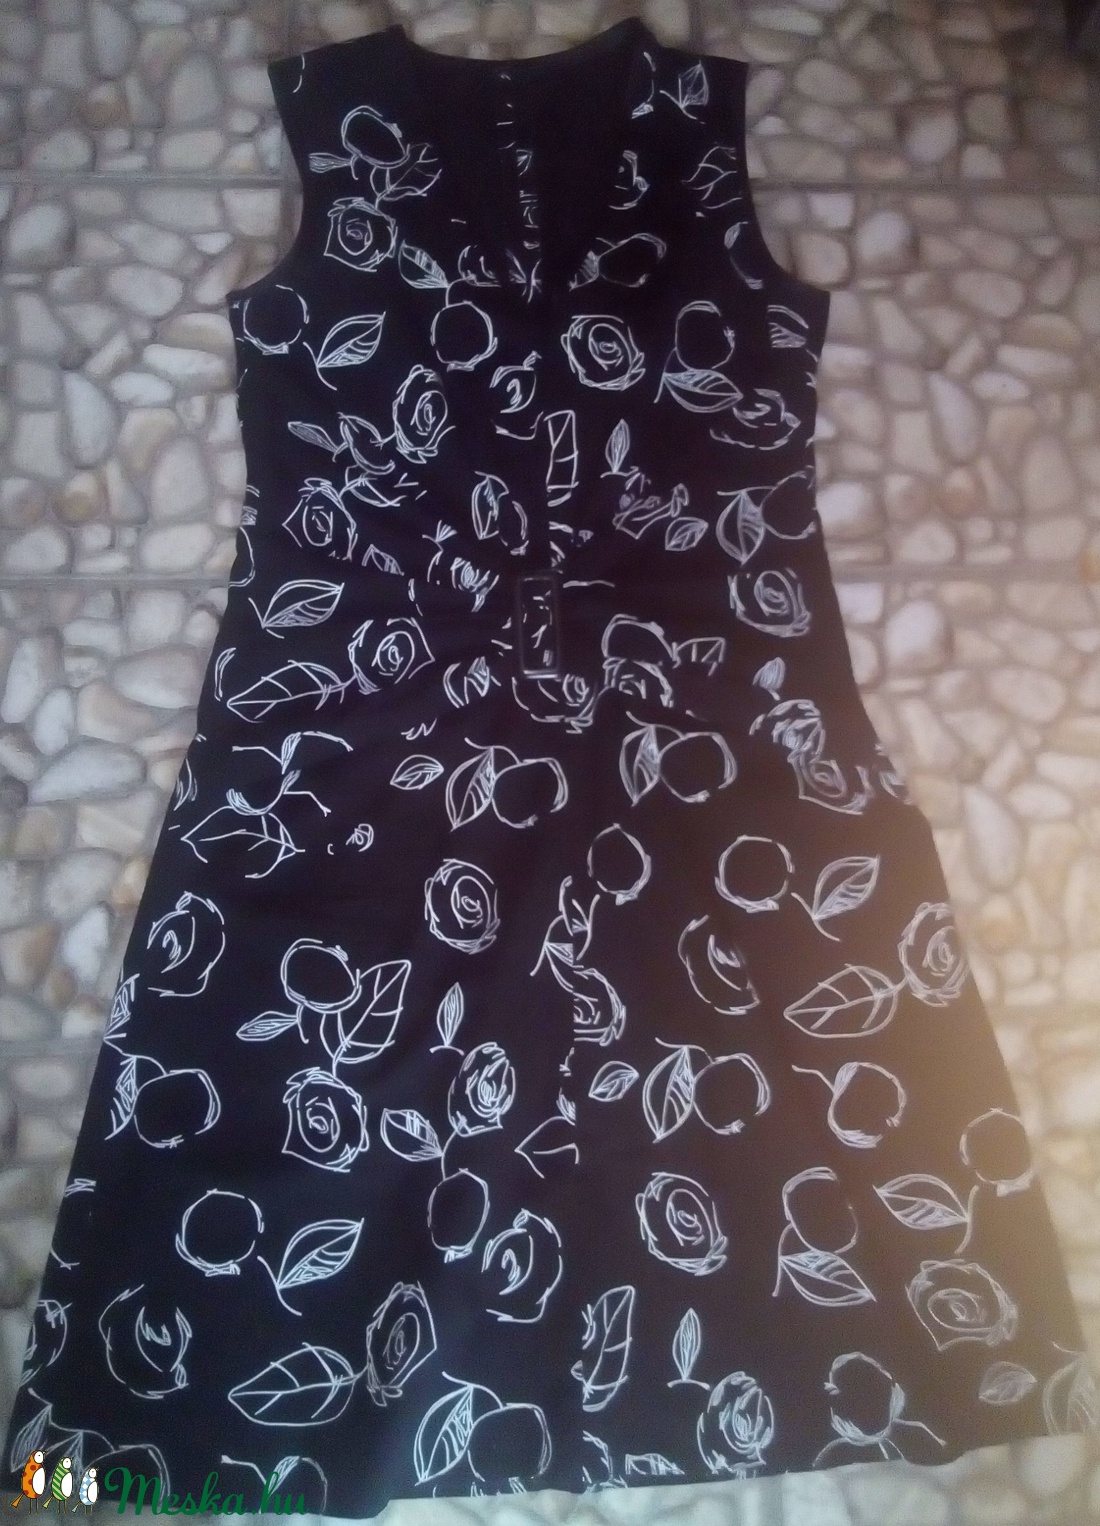 Fekete alapon fehér mintás nyári alkalmi ruha -  - Meska.hu